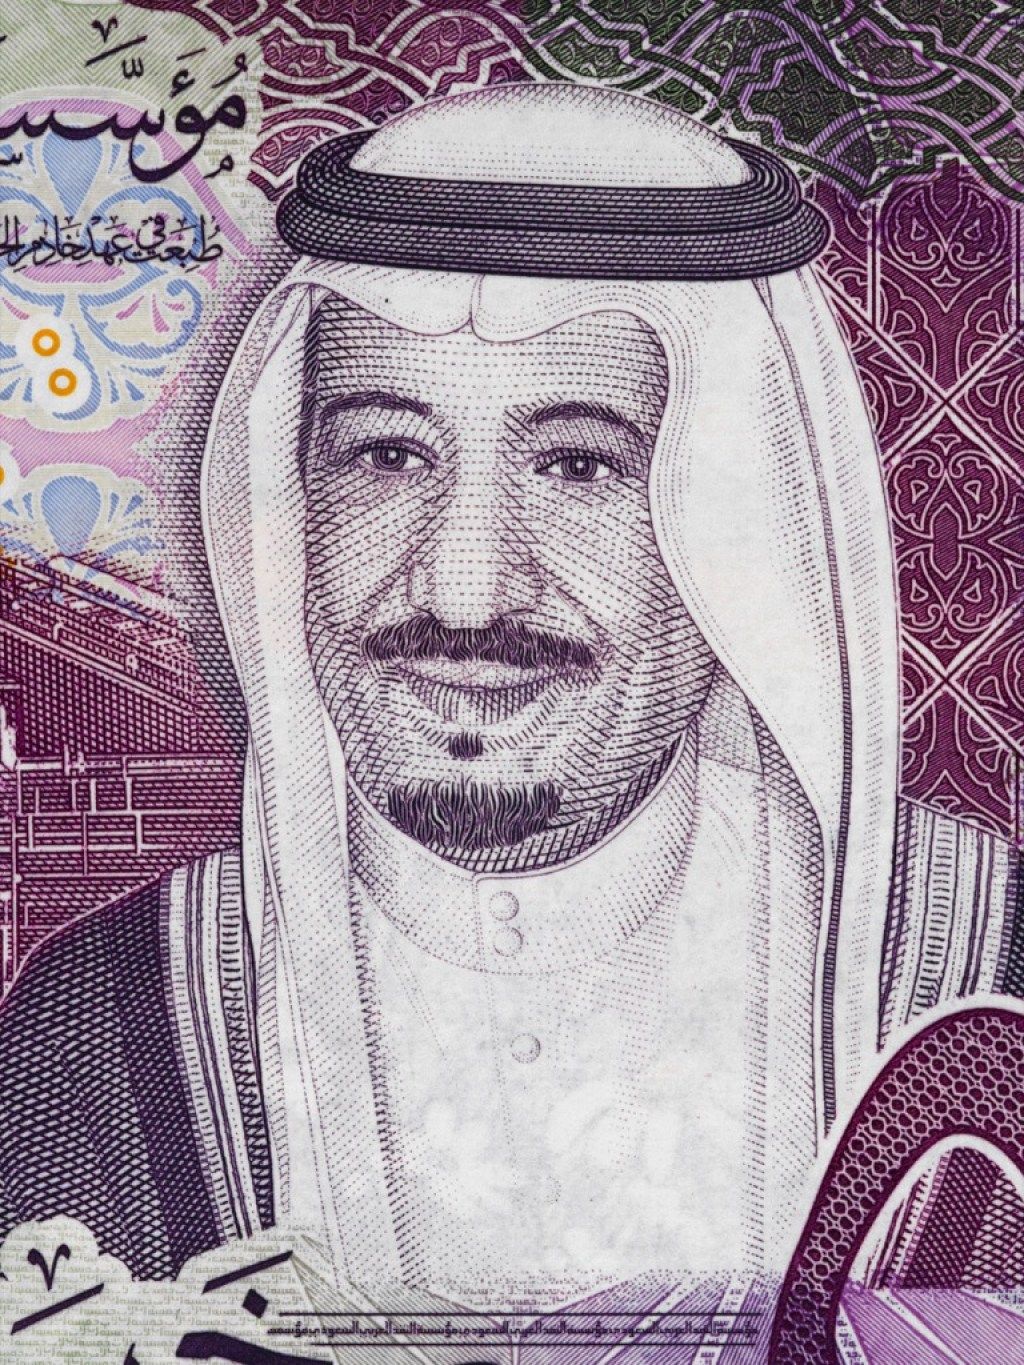 Kuningas Salman bin Abdulaziz Al Saud